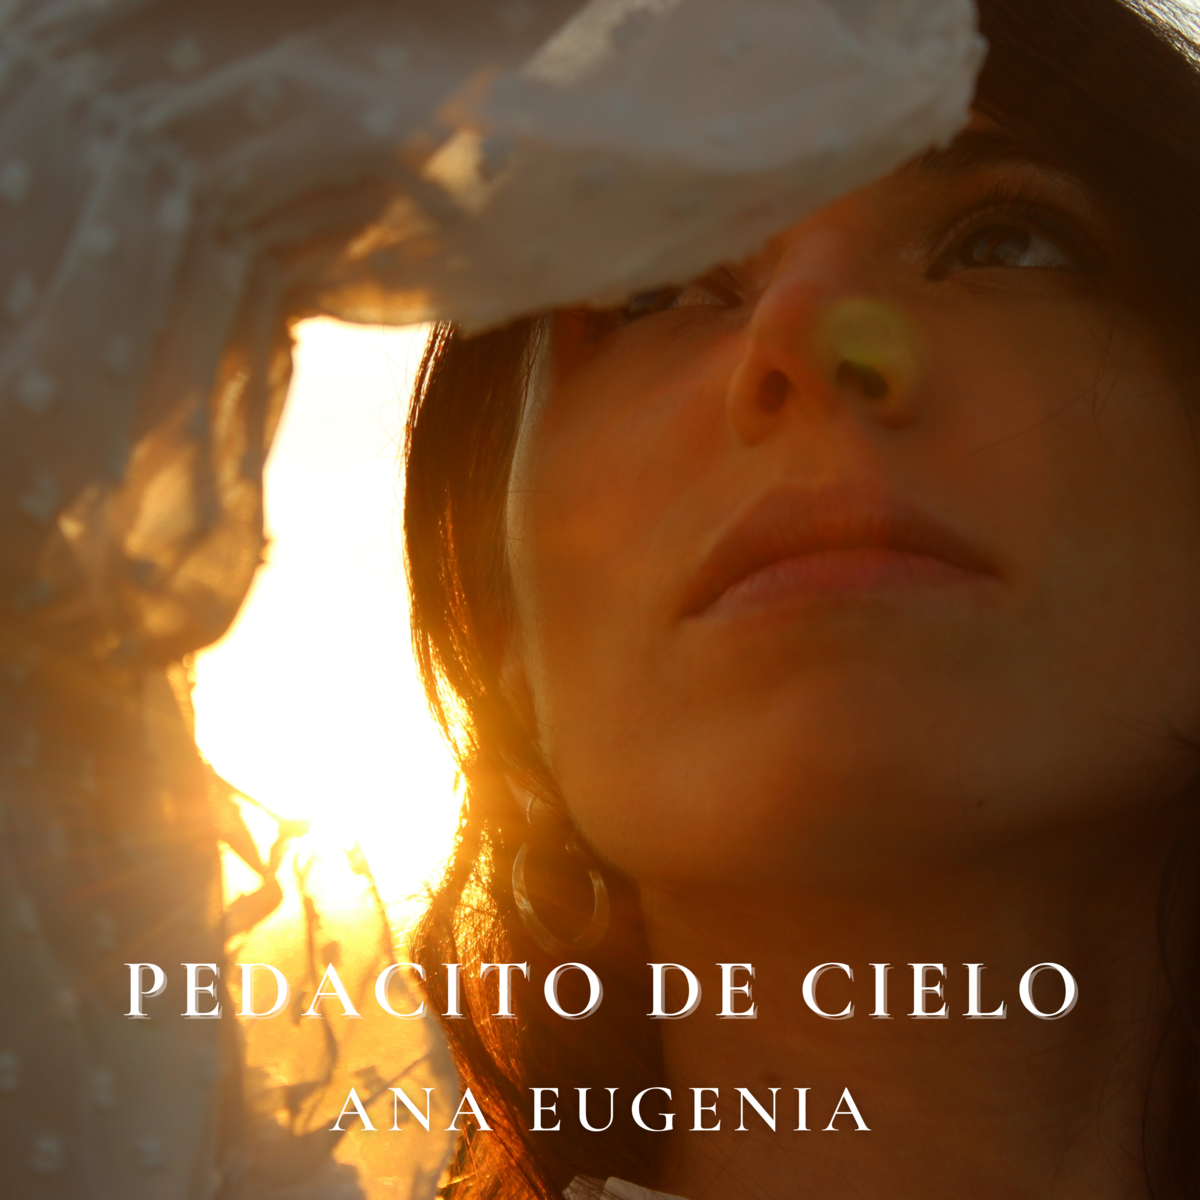 Ana Eugenia presenta su primer sencillo «Pedacito de Cielo», disponible en todas las plataformas digitales.